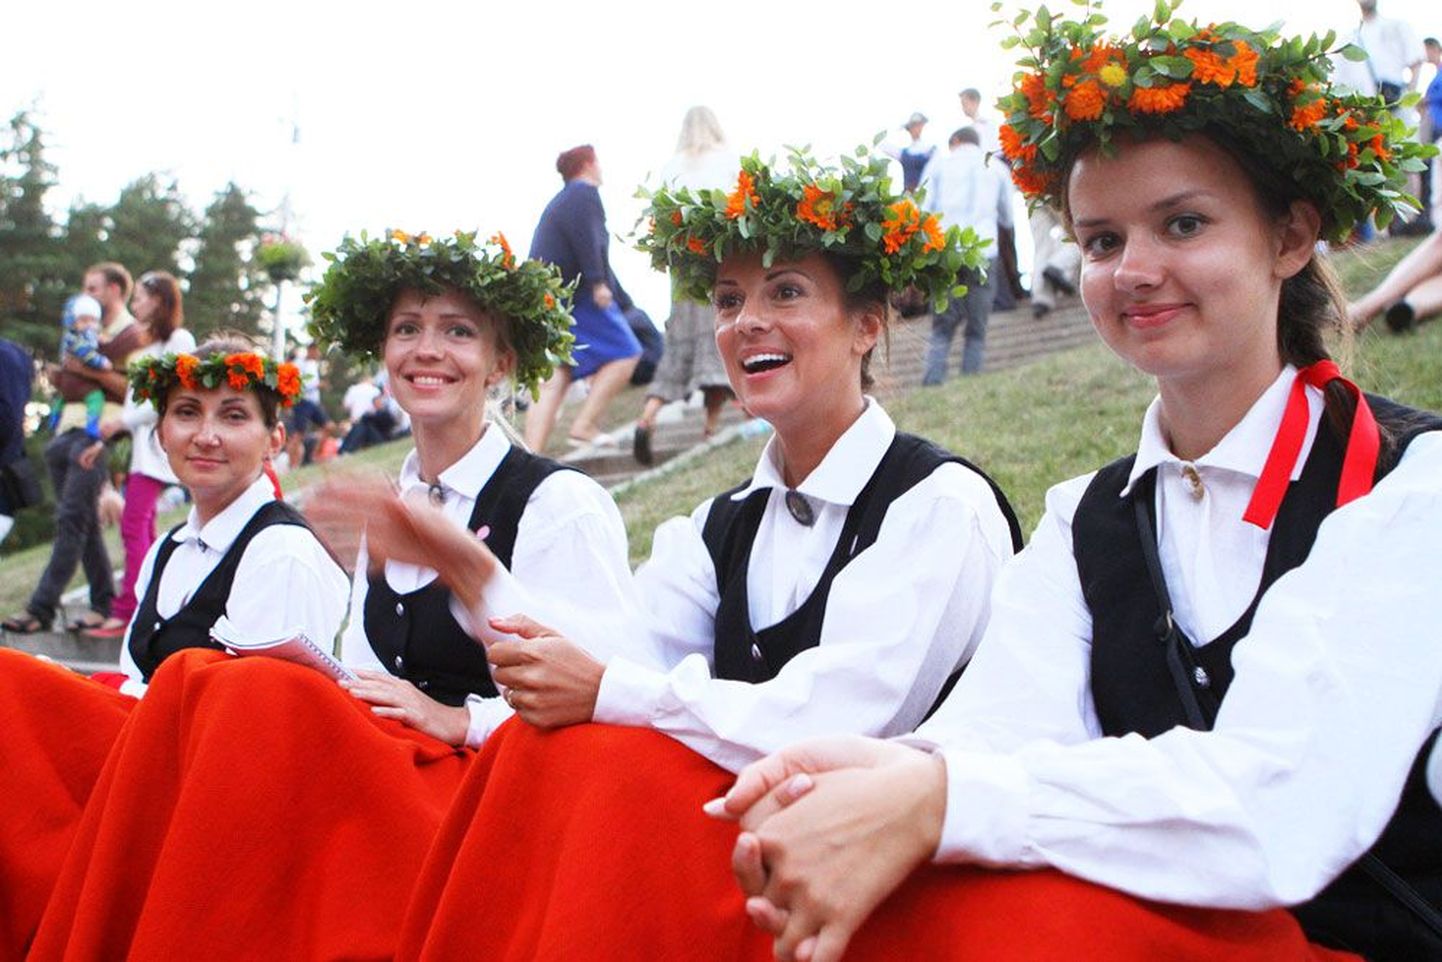 Lätlannad oma rõõmu ei varja: laulupidu on nende jaoks suursündmus. Aga eesti noormehed põrkasid raskustele, kui ihkasid nende oskusi lähemalt näha.